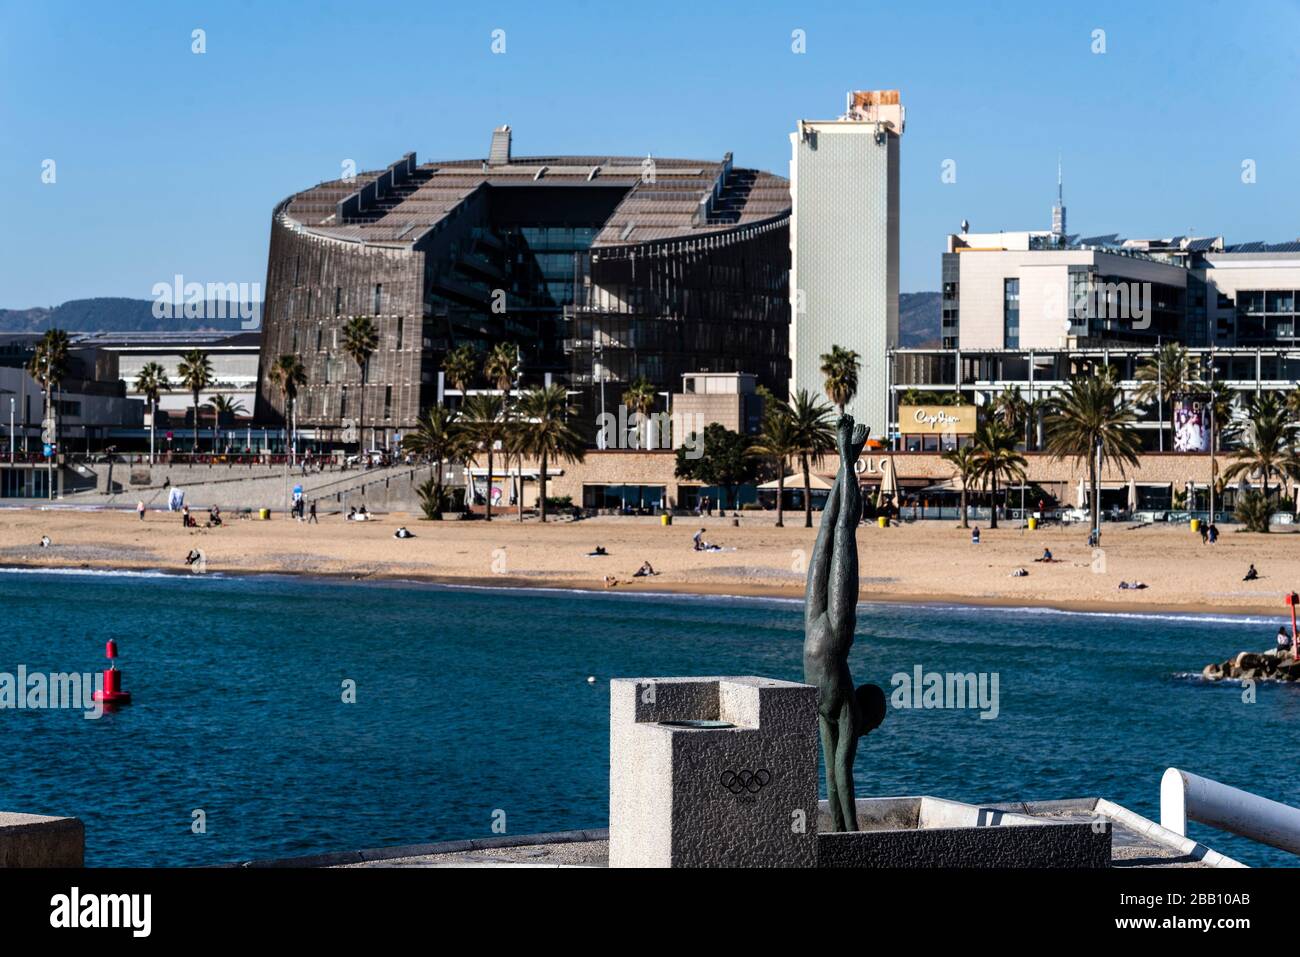 Olympic port of Barcelona, Catalonia, Spain. Stock Photo